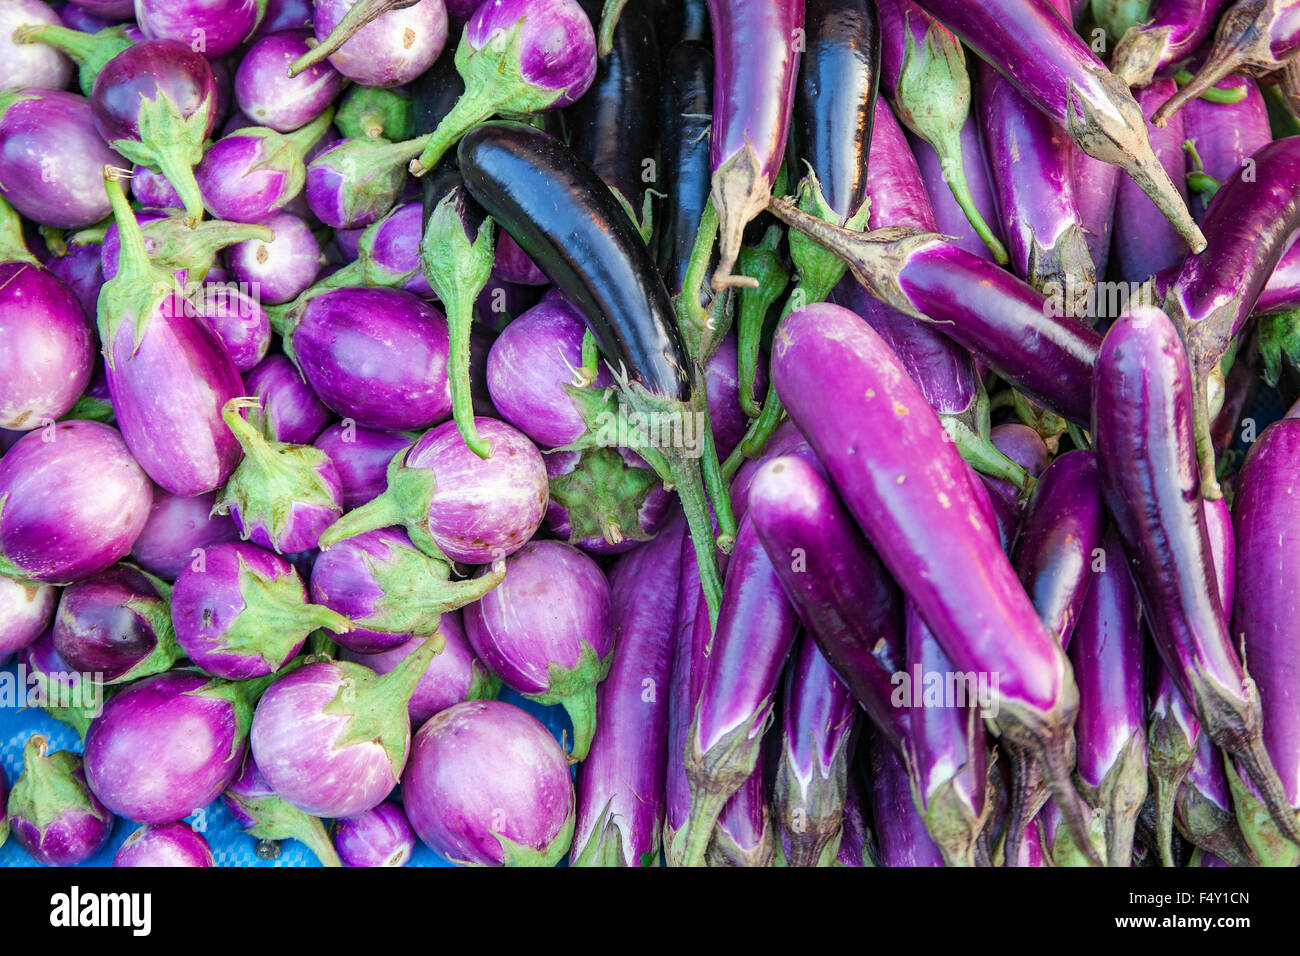 Long et rond brinjal aubergine pourpre ou la vente au marché local le dimanche. Focus sélectif avec une faible profondeur de champ. Banque D'Images